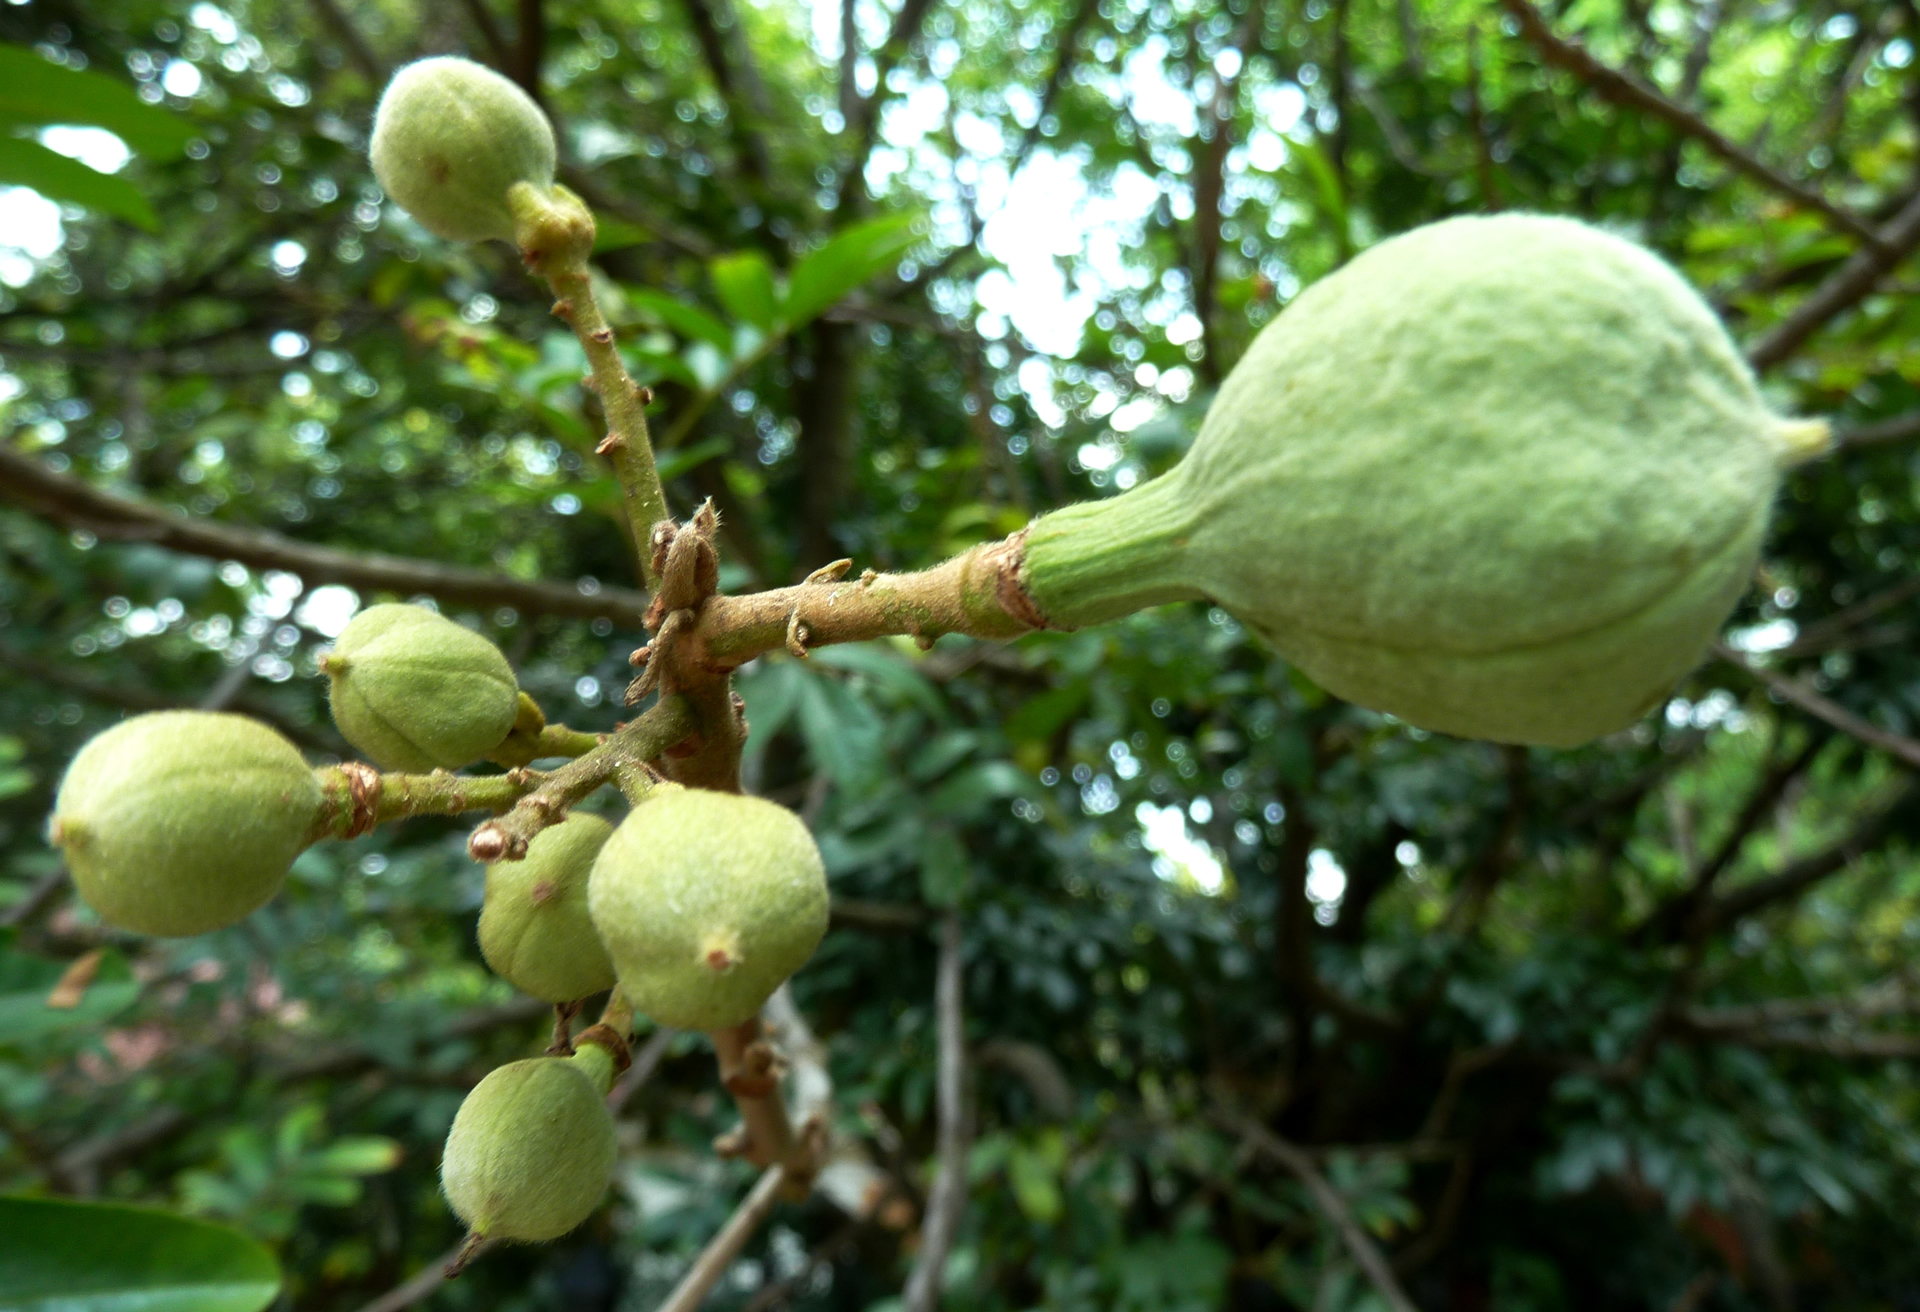 Trichilia emetica (Msikidzi) developing fruit